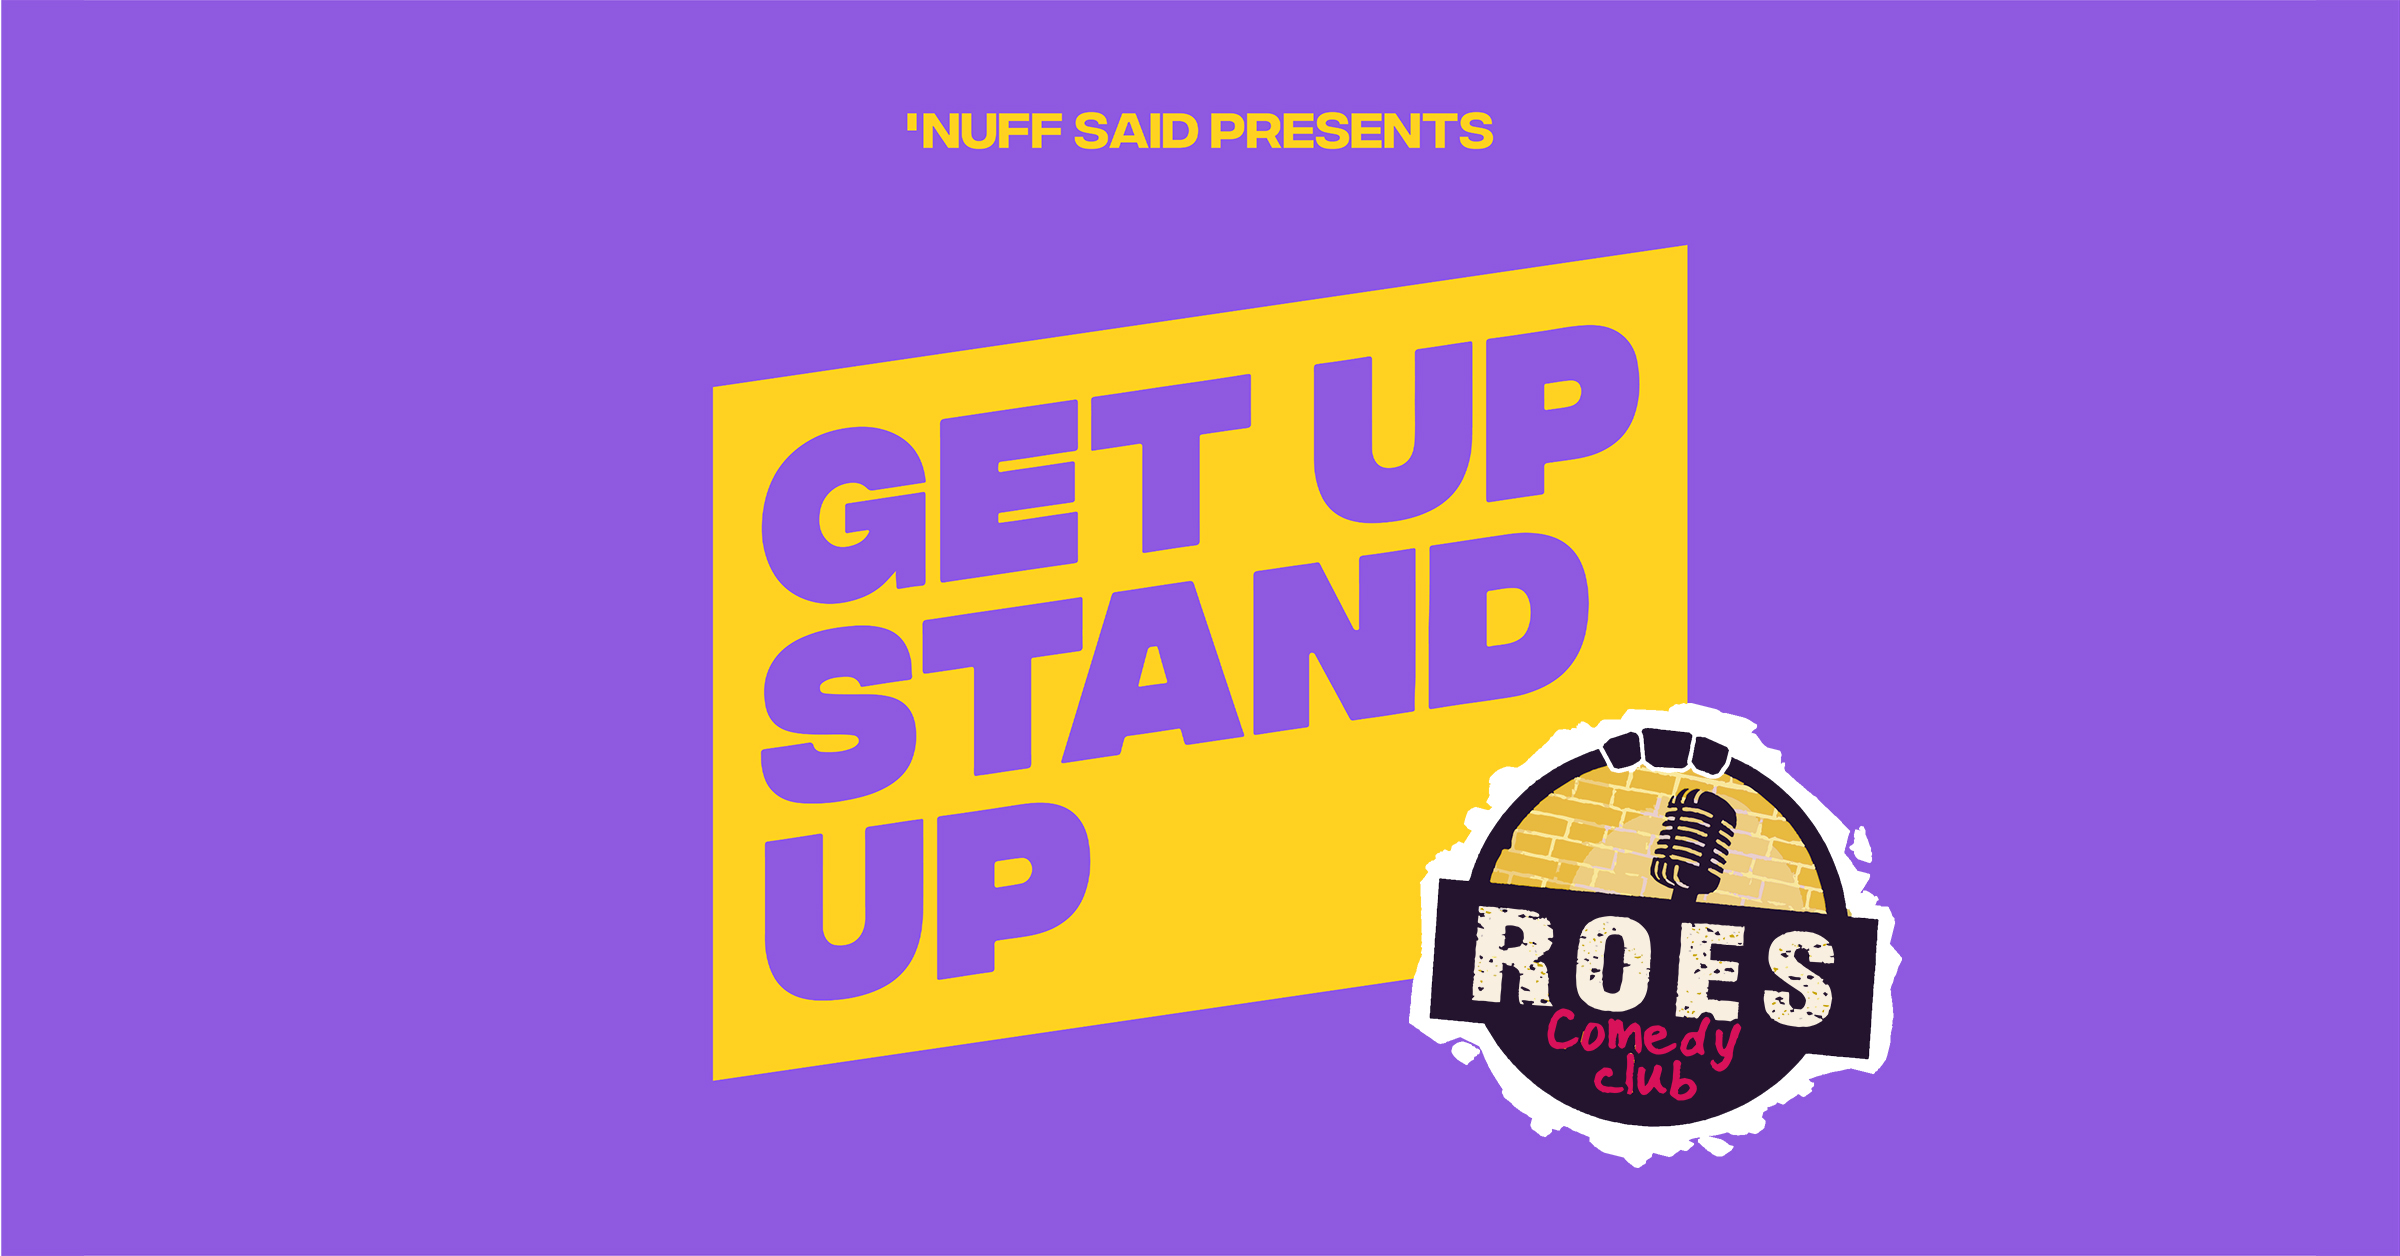 Ticket kopen voor evenement Roes Comedy Club: Get Up Stand Up